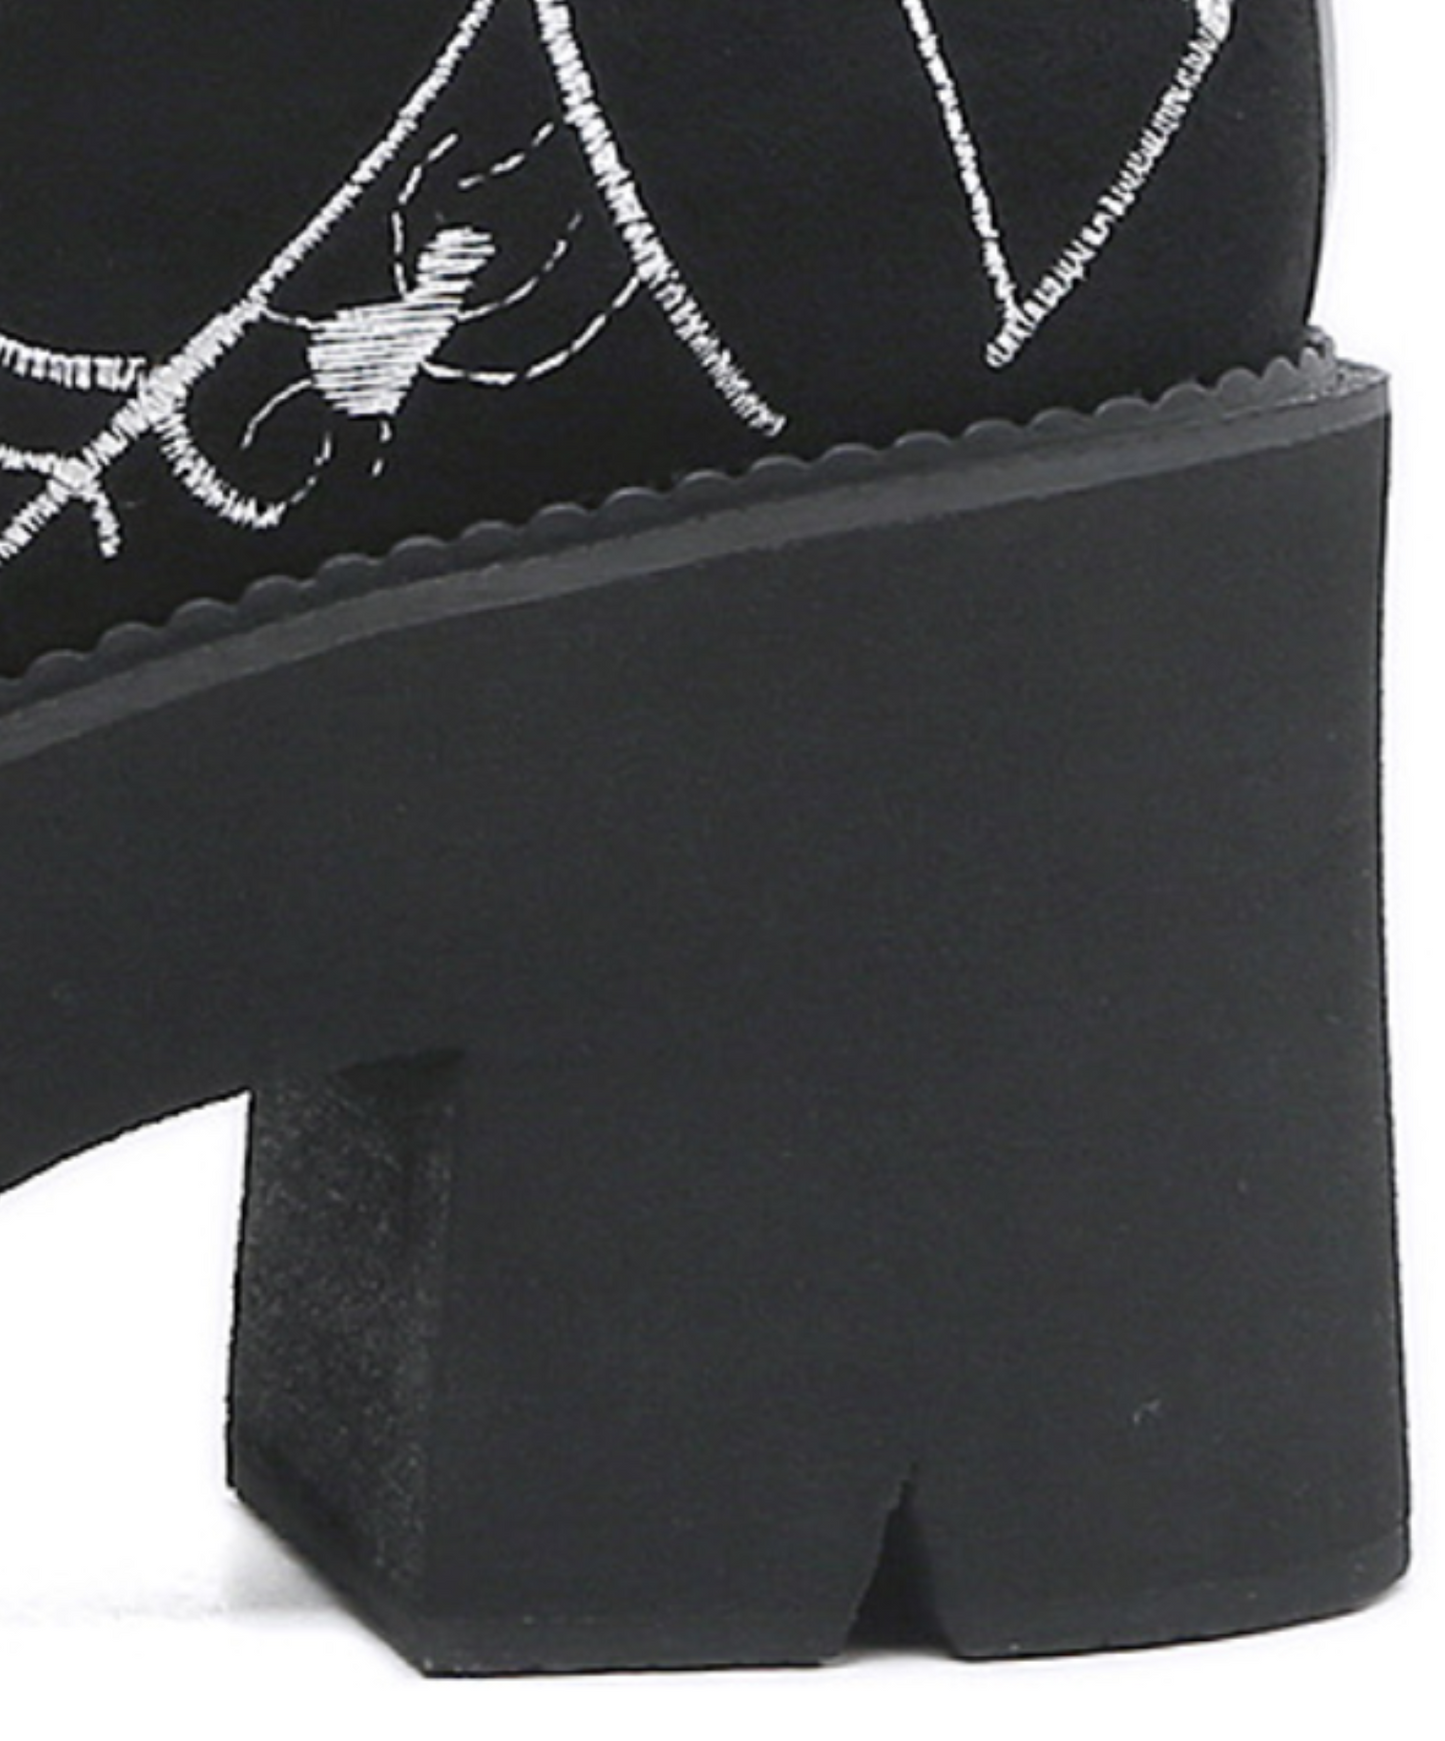 spider web embroidery suede look zip up boots EN1509